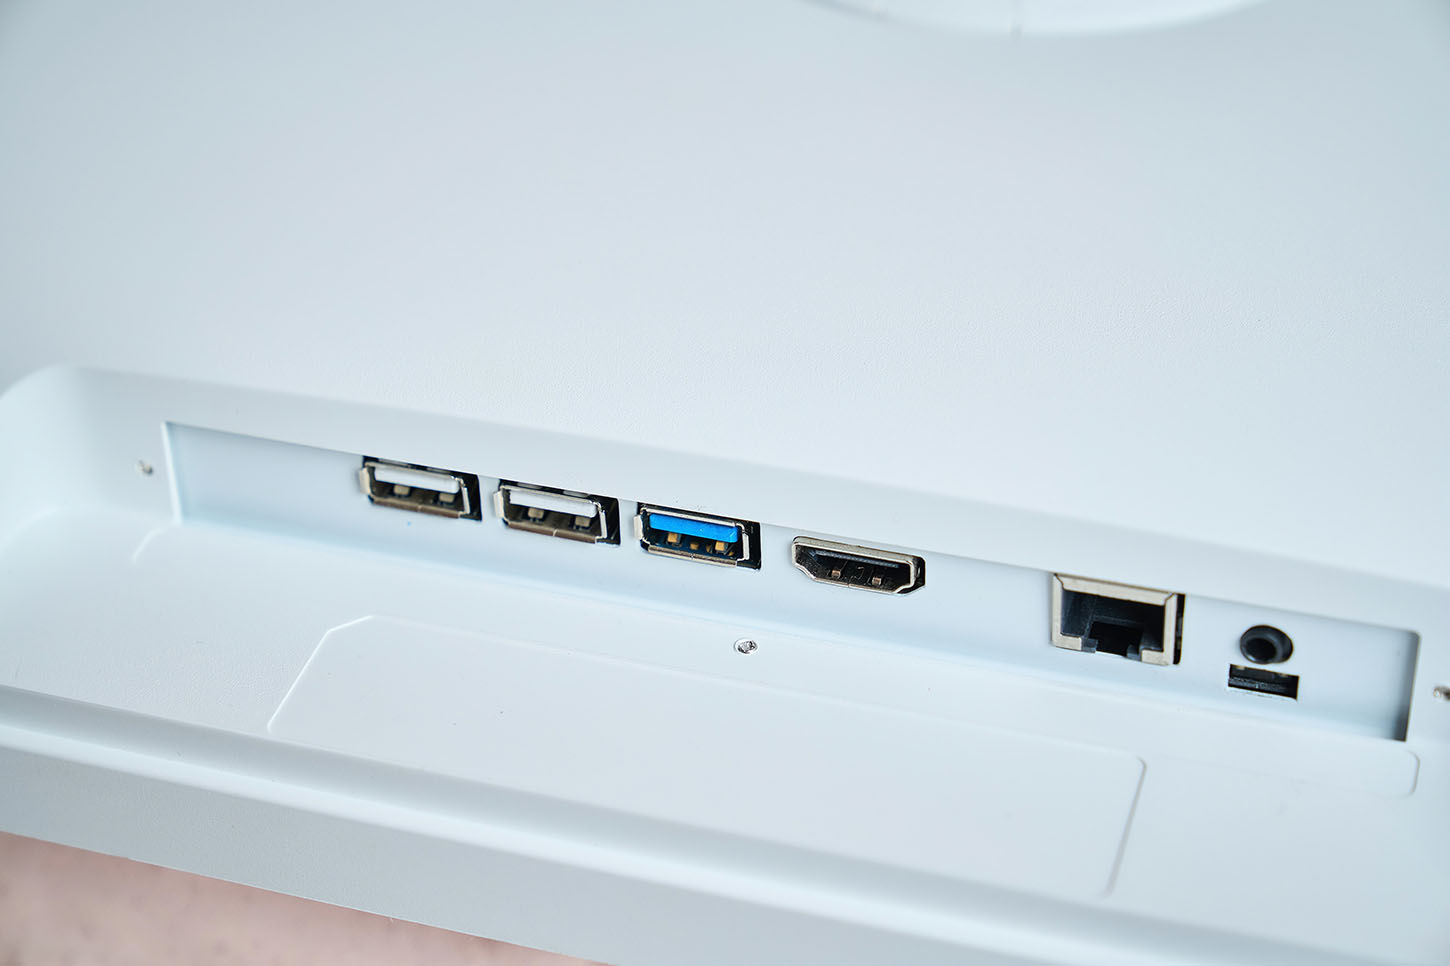 機背下方則有傳輸端子群，包含一組 HDMI 2.0 輸入介面，三組 USB 端子，可外接儲存設備如行動硬碟等，最後則是有線網路 LAN 端子，而閨蜜機另外也支援雙頻 WiFi 無線網路，所以上網更方便。